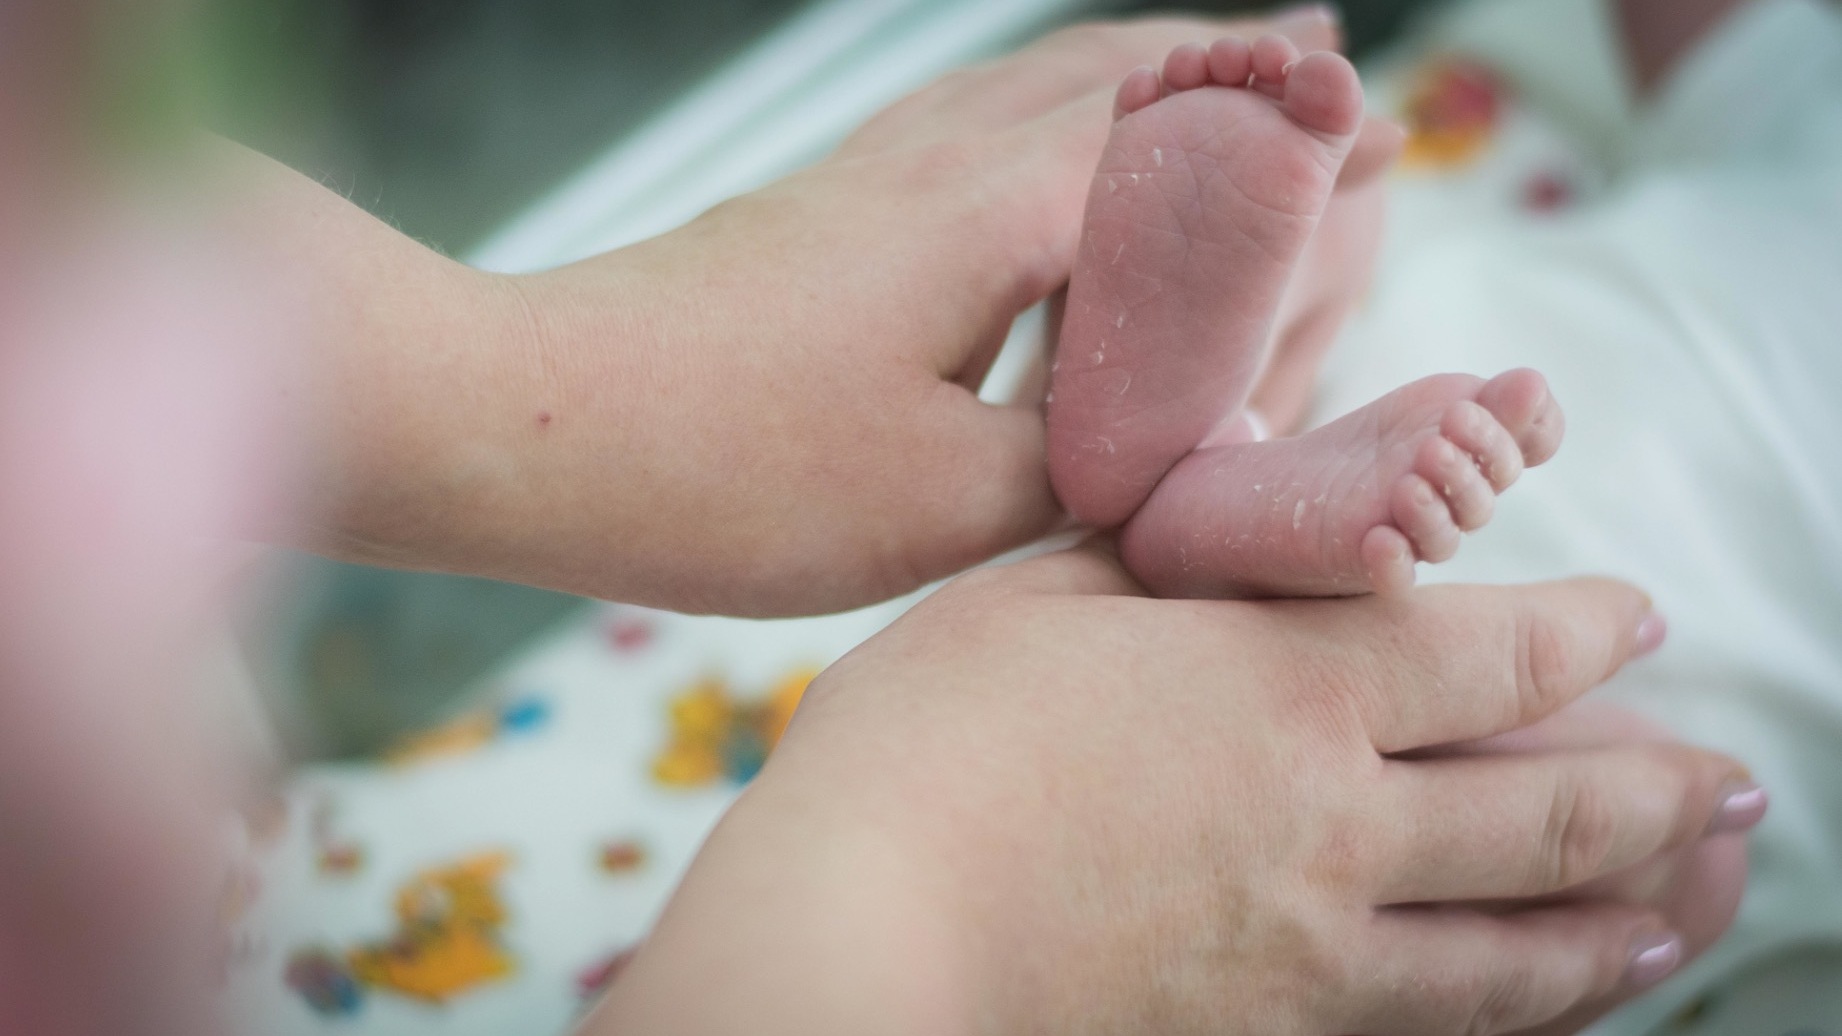 Самые редкие имена для новорождённых озвучили в Приморье — есть чему удивиться